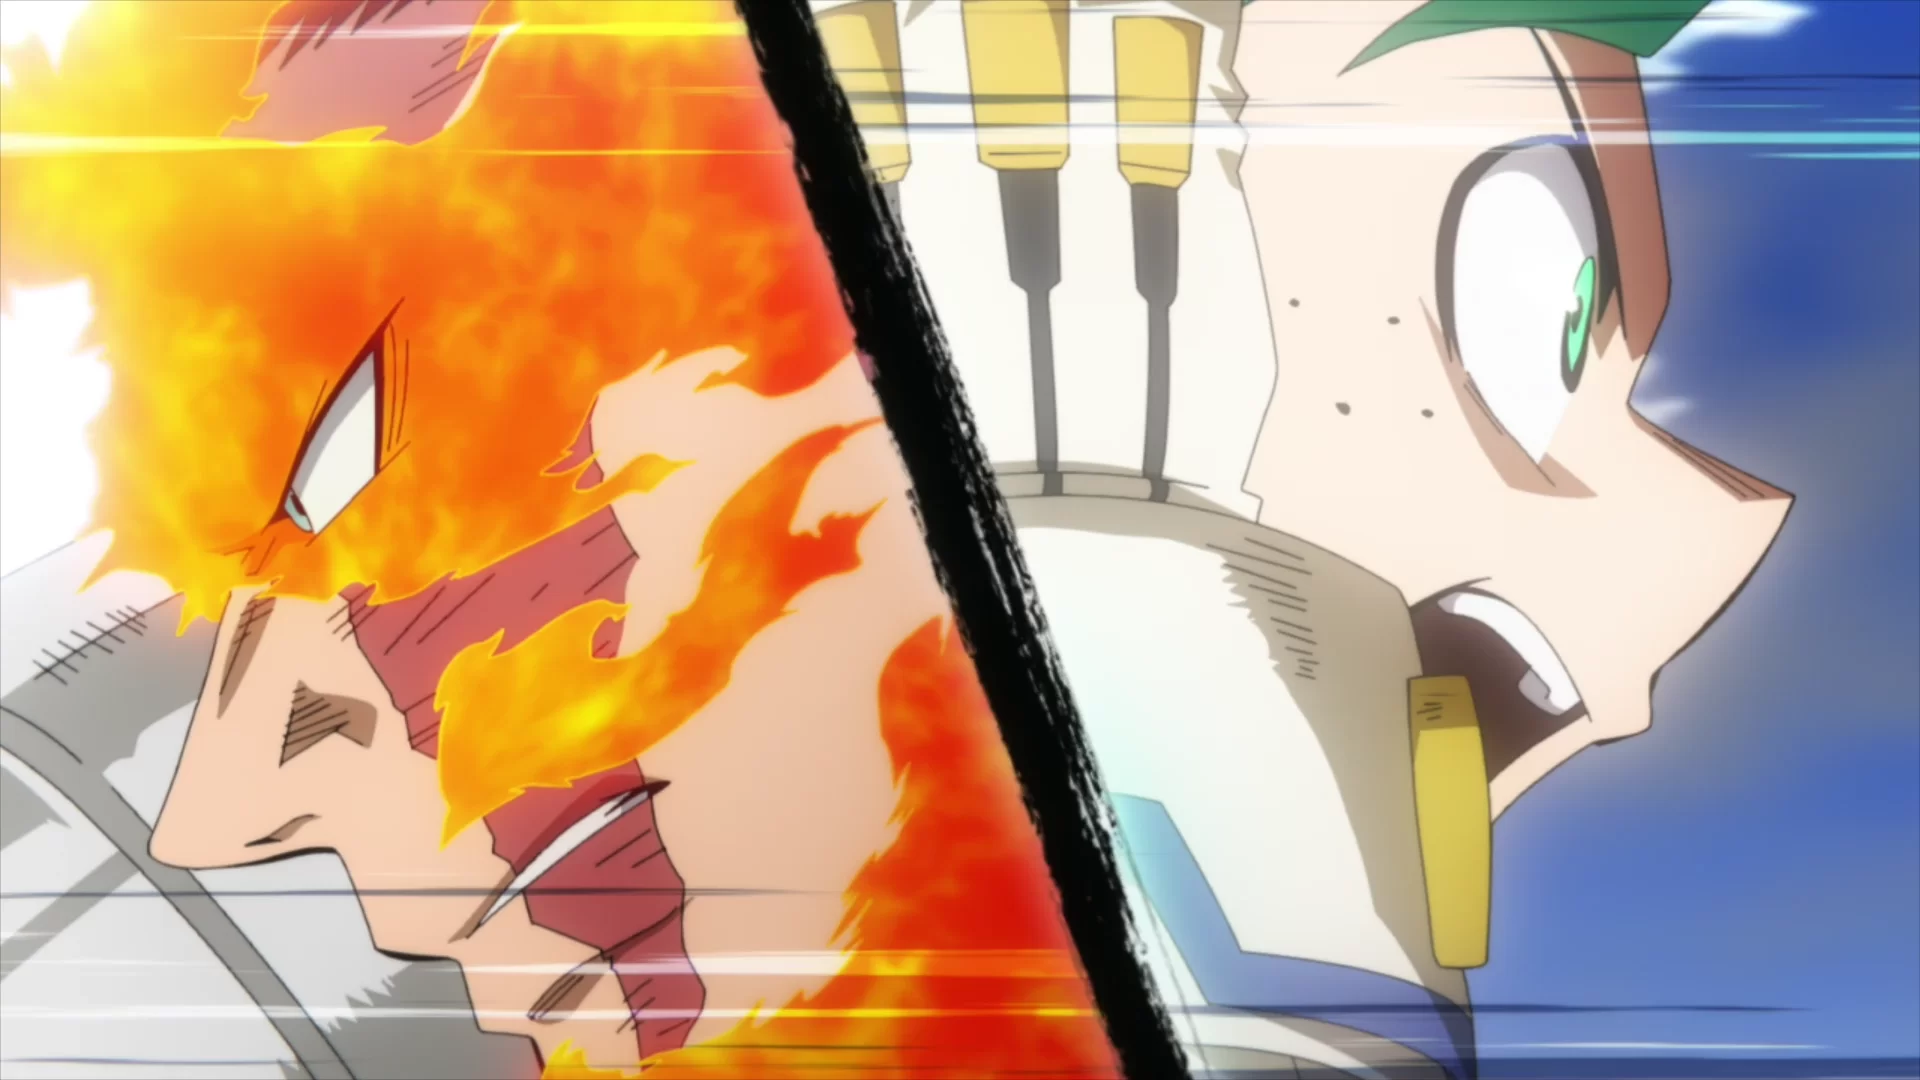 Minaturka 6 odcinka anime Boku no Hero Academia 6